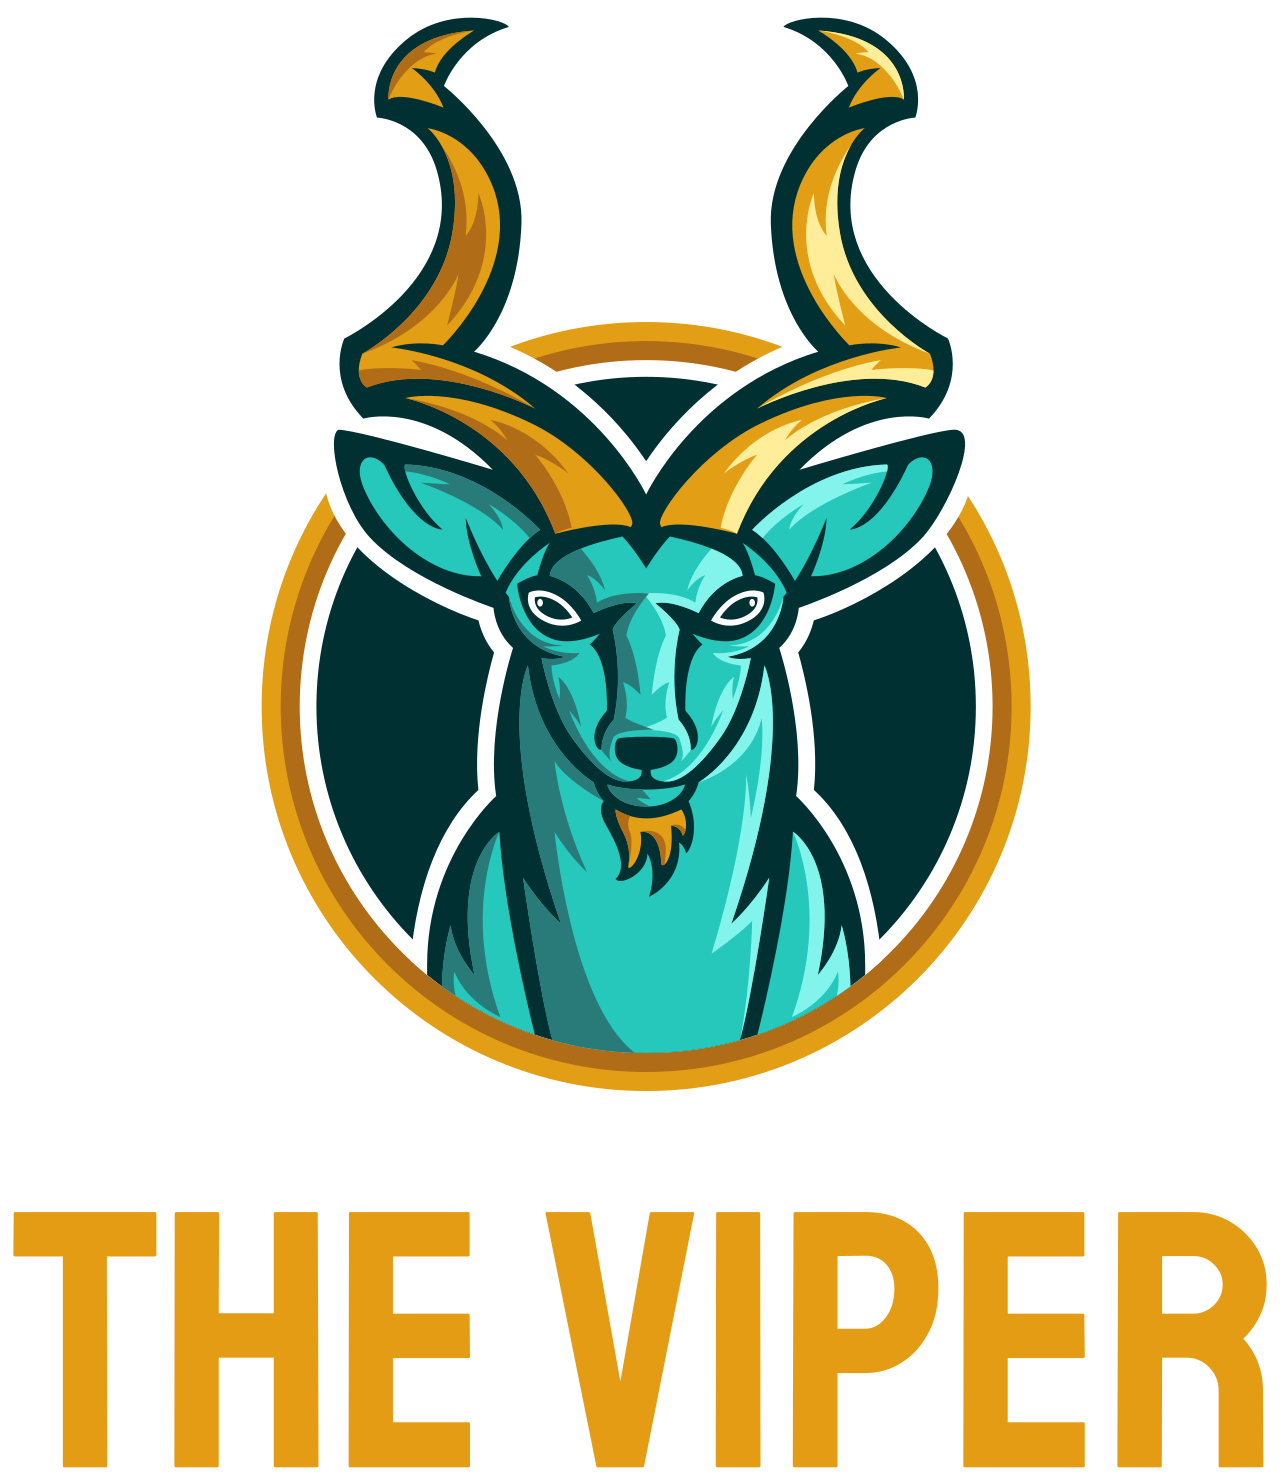 The Viper's logo